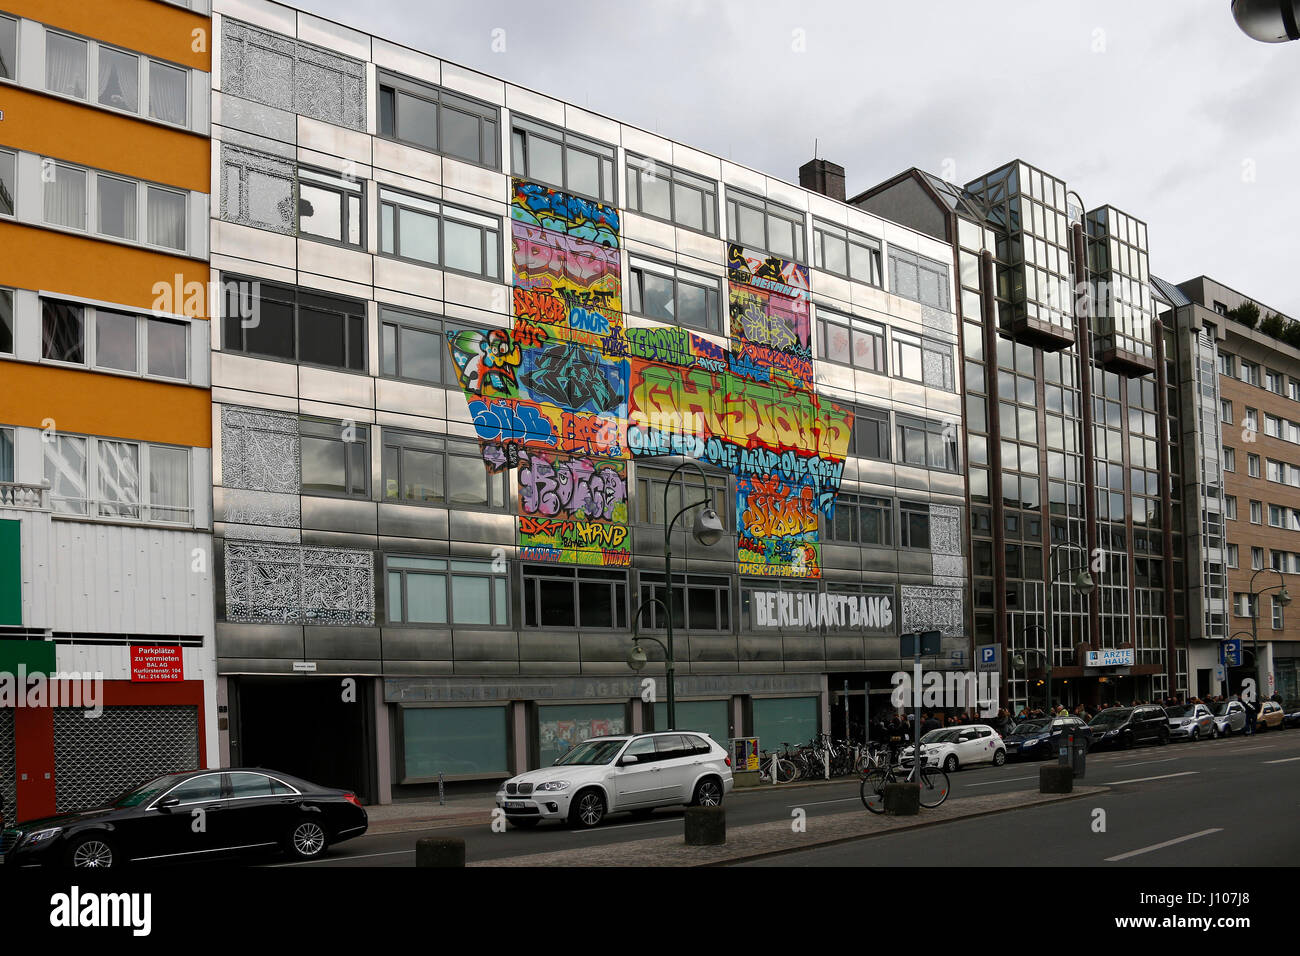 Das Abbruchhaus, das von Berliner und internationalen Street Art- und Graffity Kuenstlern umgestaltet worden ist mit dem Titel "Haus Berlin' oder Foto Stock